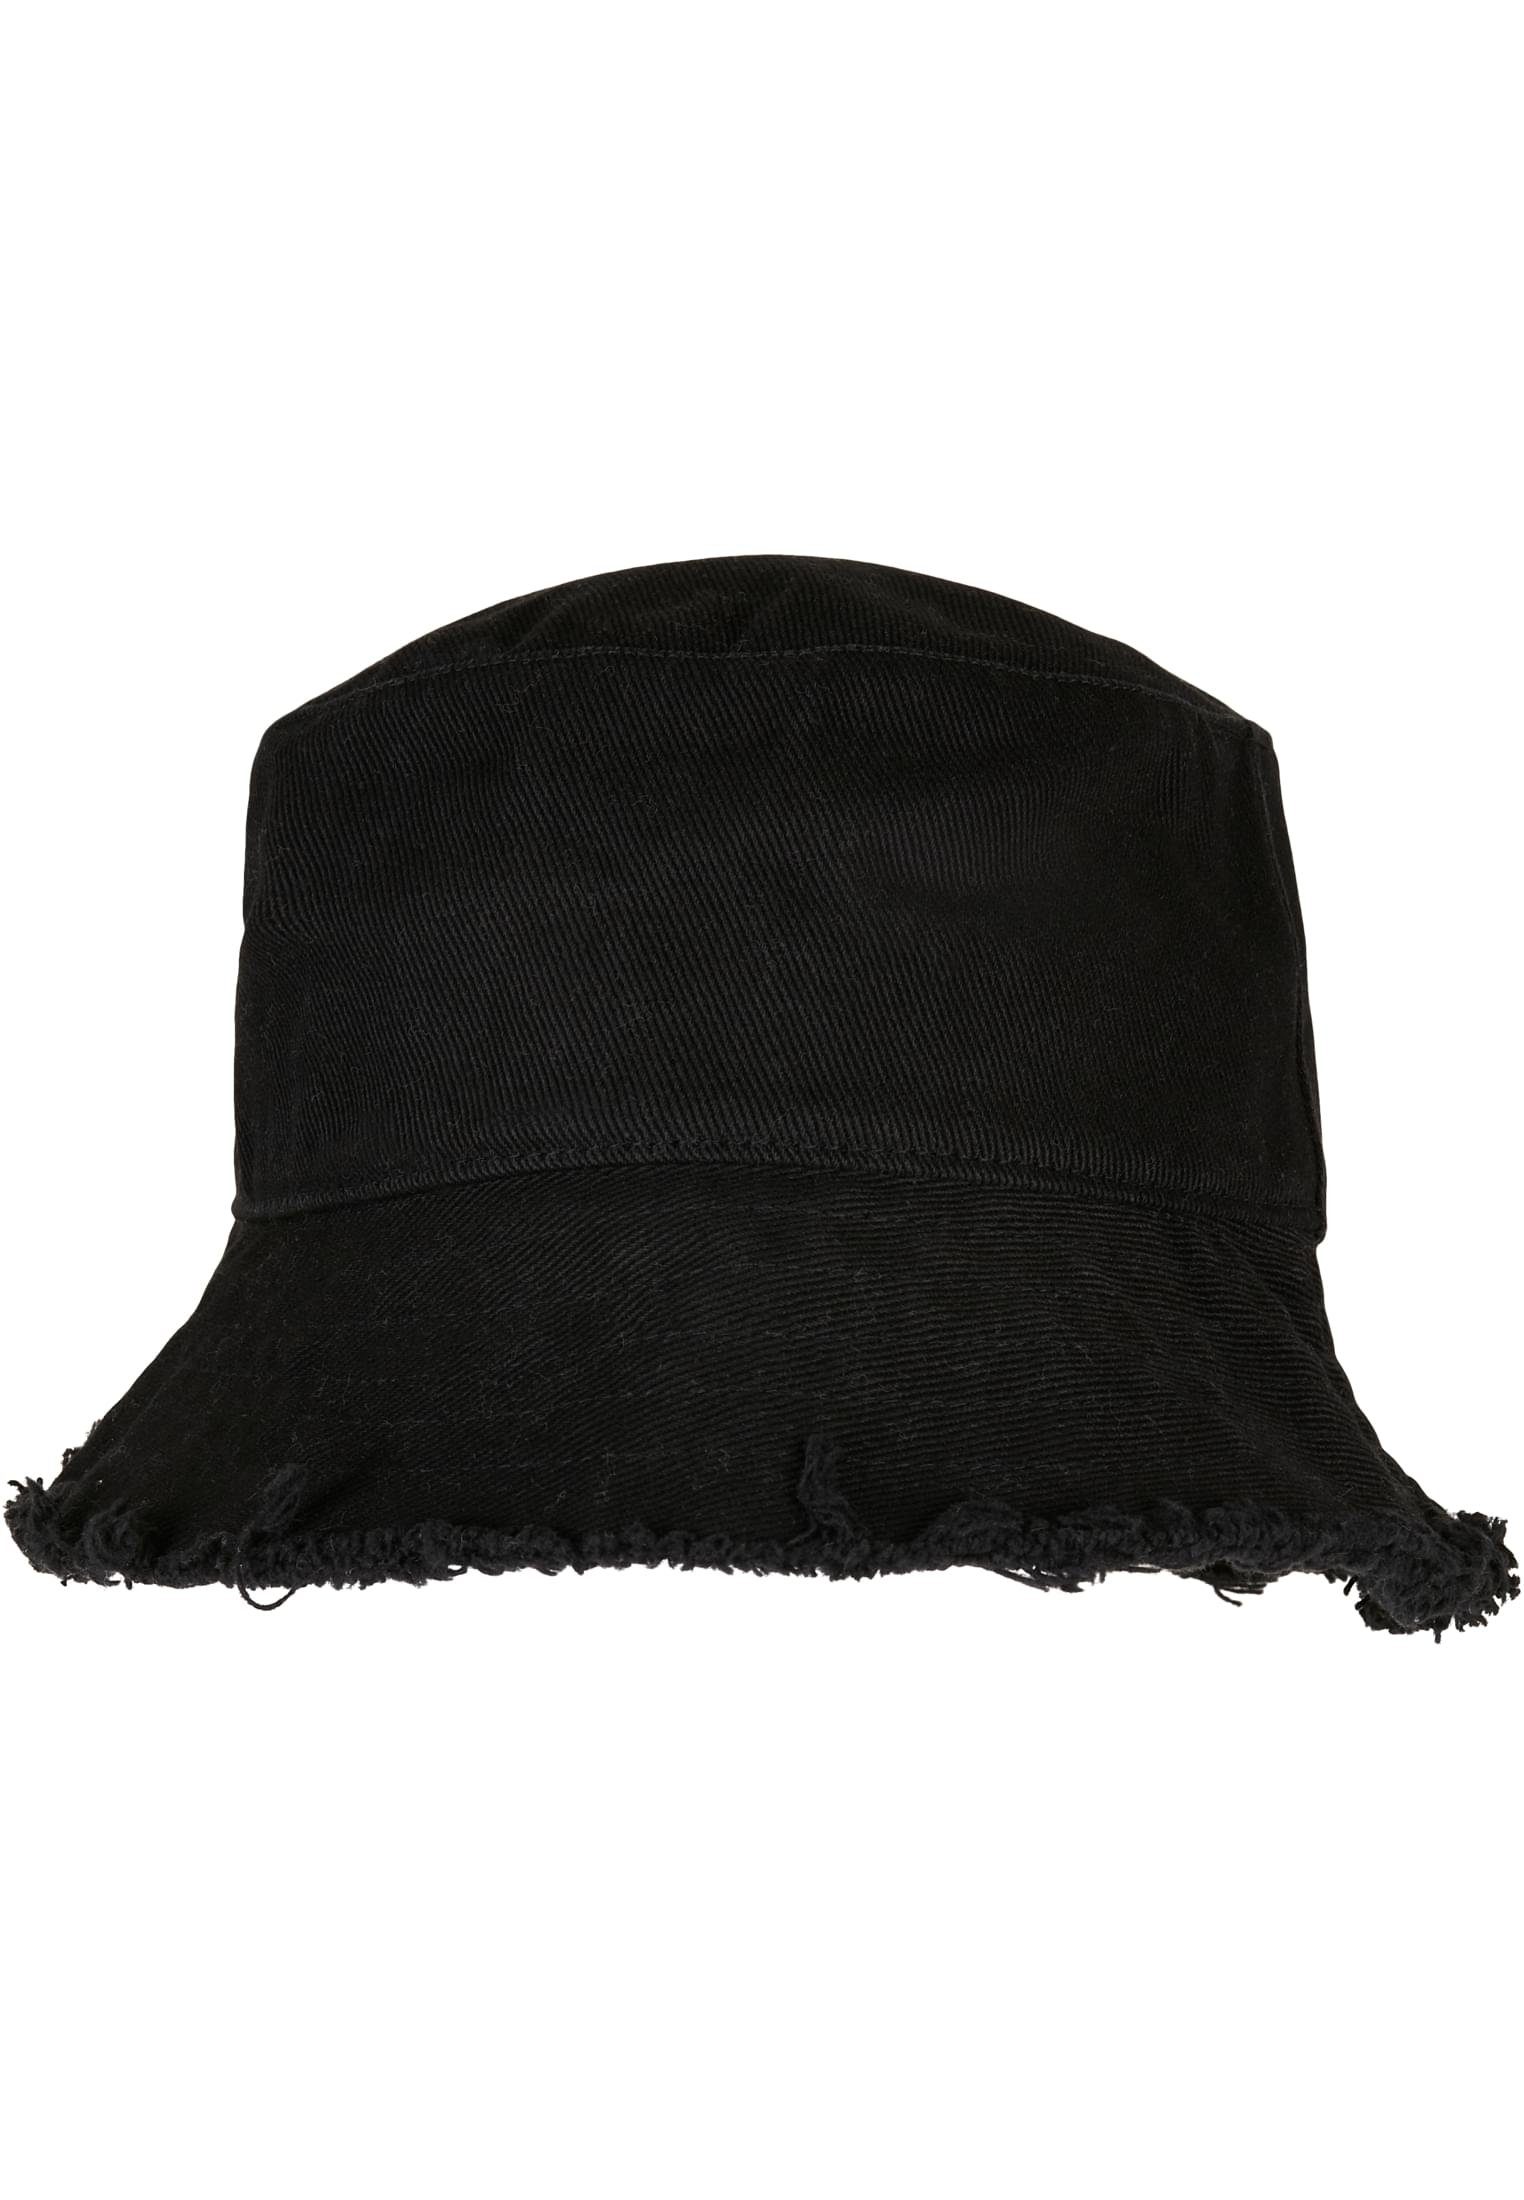 Bucket Accessoires Open Edge Flexfit Cap black Hat Flex